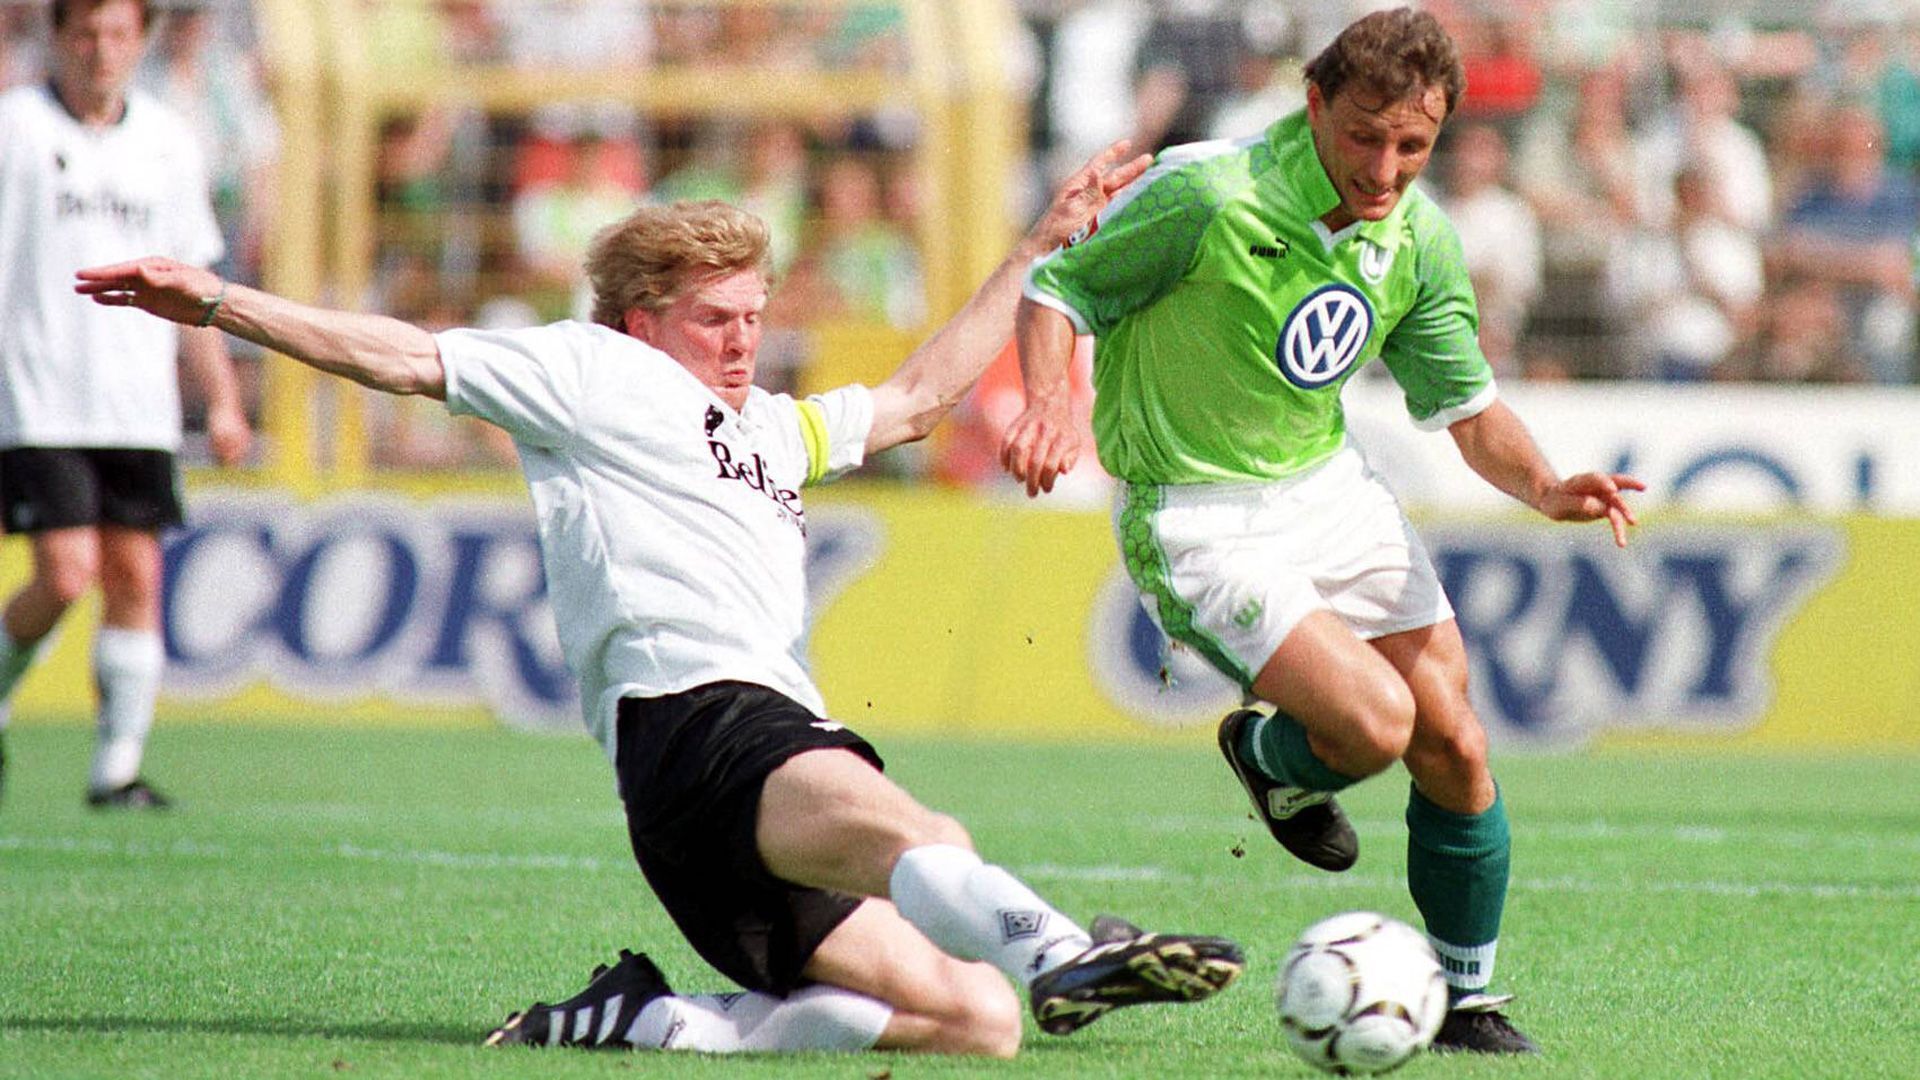 
                <strong>Saison 1997/98 (Borussia Mönchengladbach)</strong><br>
                Drei Punkte trennten den Tabellen-17. Borussia Mönchengladbach vor dem letzten Spieltag der Saison 1997/98 vom 15., dem Karlsruher SC. Während Gladbach in Wolfsburg 2:0 gewann, verlor der KSC in Rostock 2:4. Am Ende hielten die Fohlen aufgrund des Torverhältnisses die Klasse vor den punktgleichen Badenern.
              